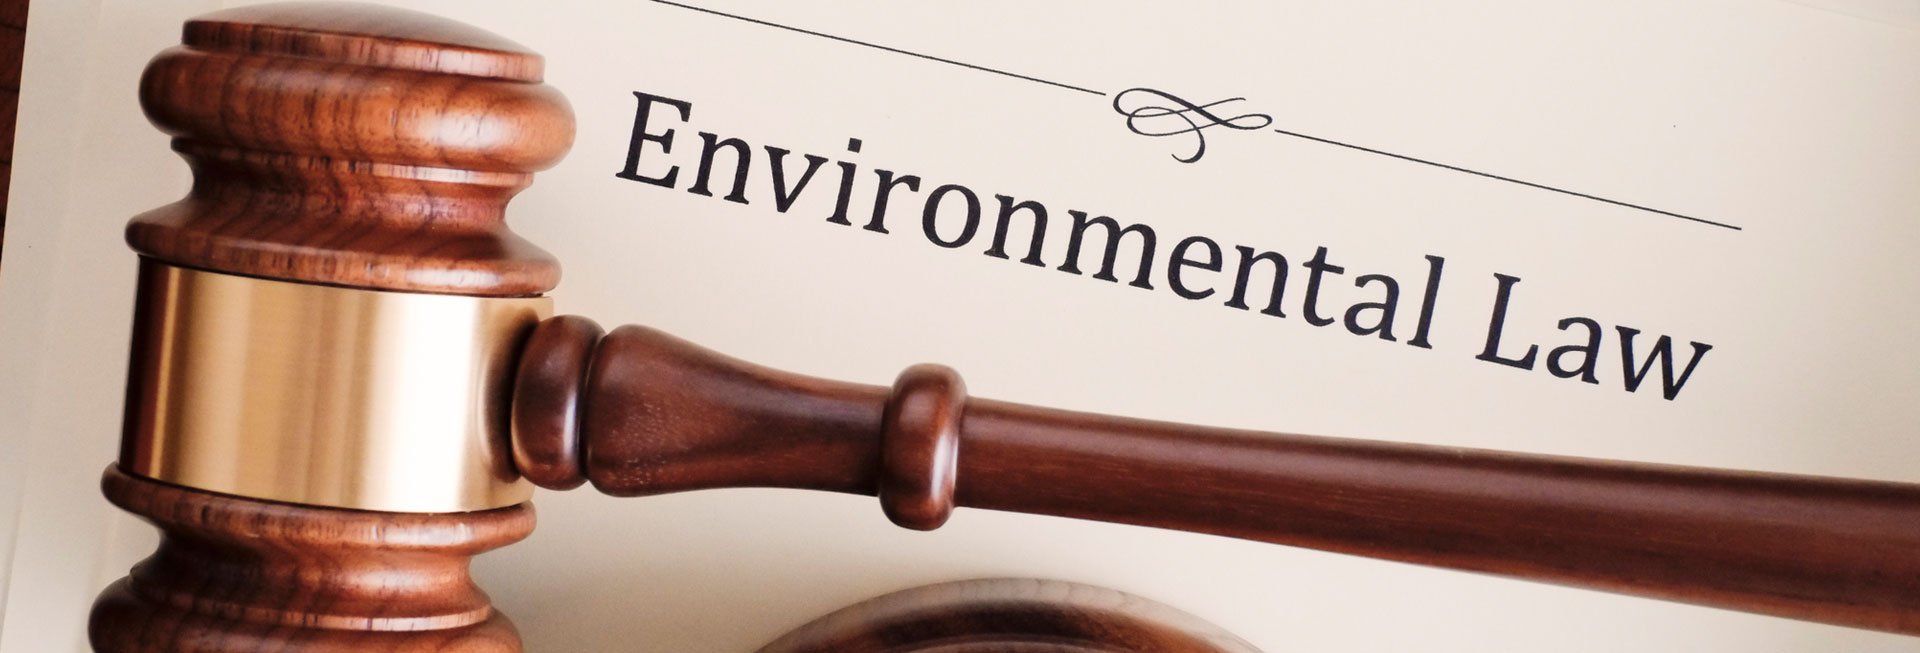 Richterhammer vor Umweltrecht-Schriftzug